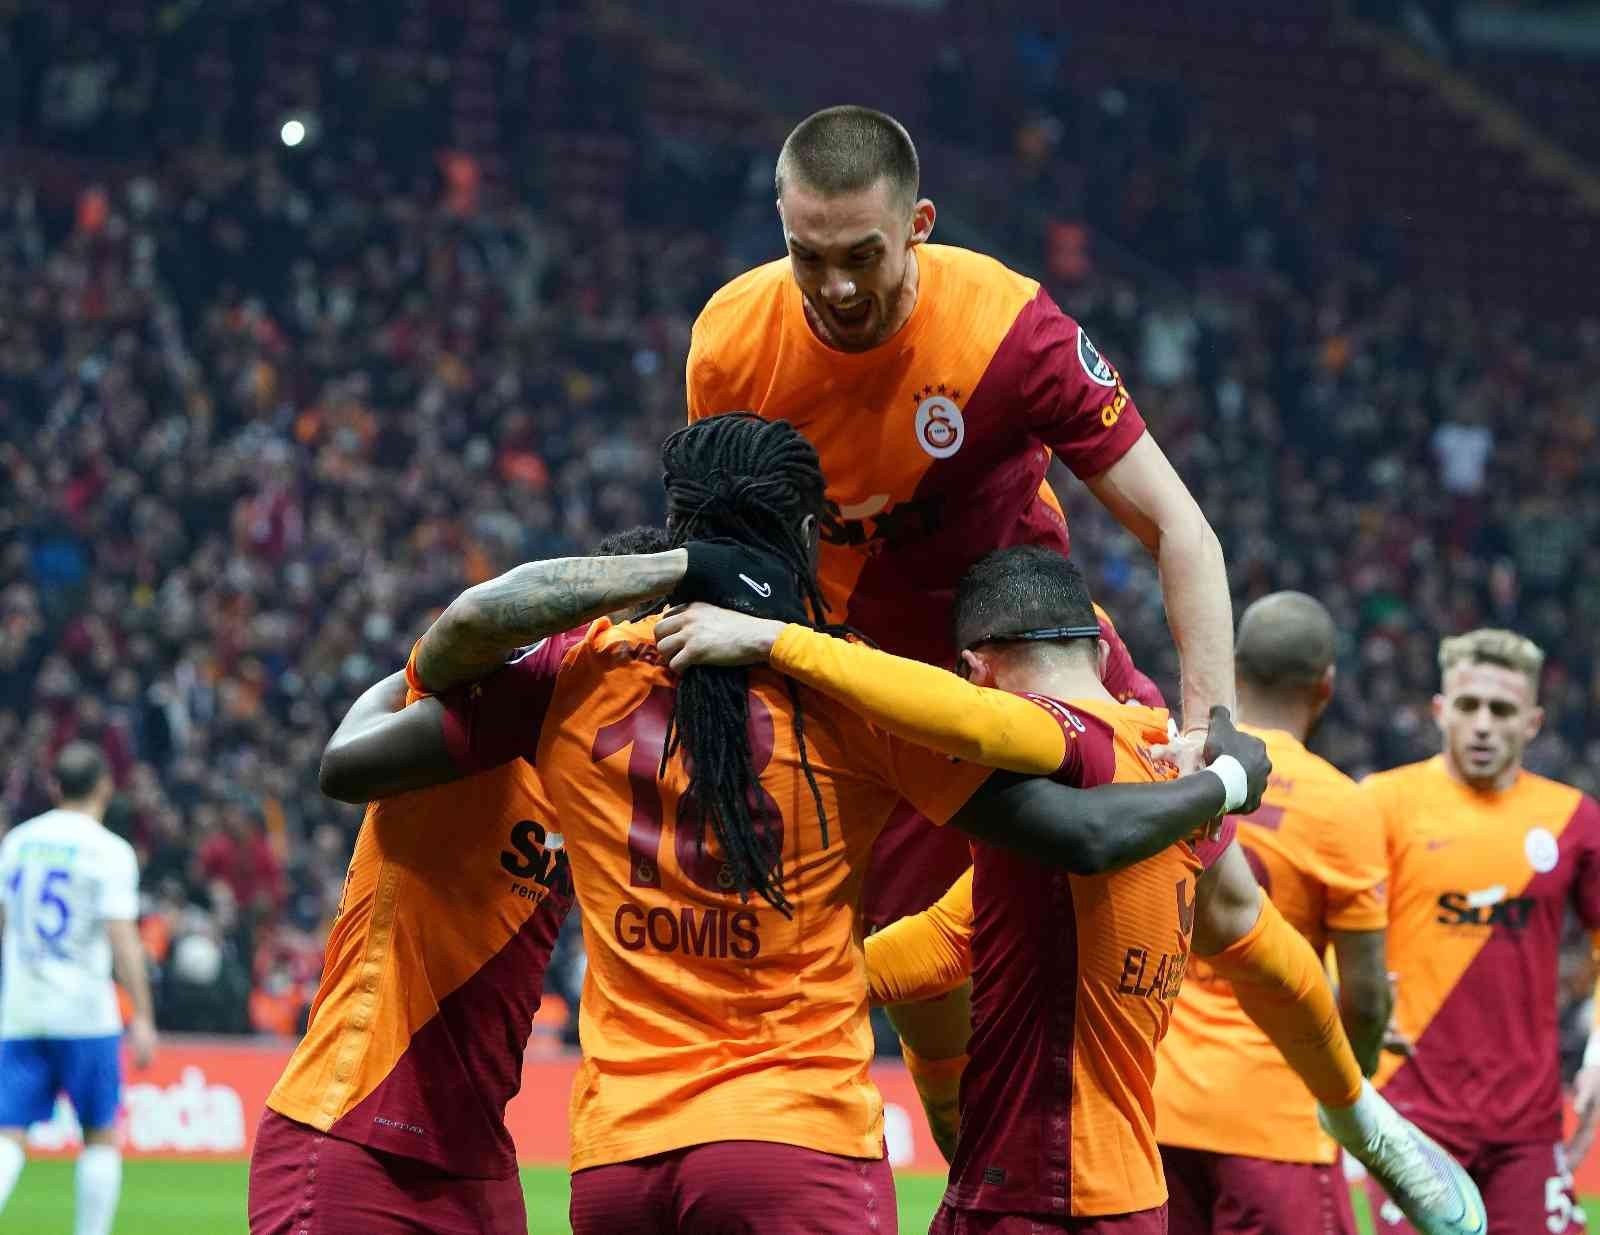 Spor Toto Süper Lig’in 27. haftasında gol rekoru kırıldı. 10 karşılaşmada toplam 44 gol atılırken, bu durum 64. sezonunu yaşayan ligde en fazla ...